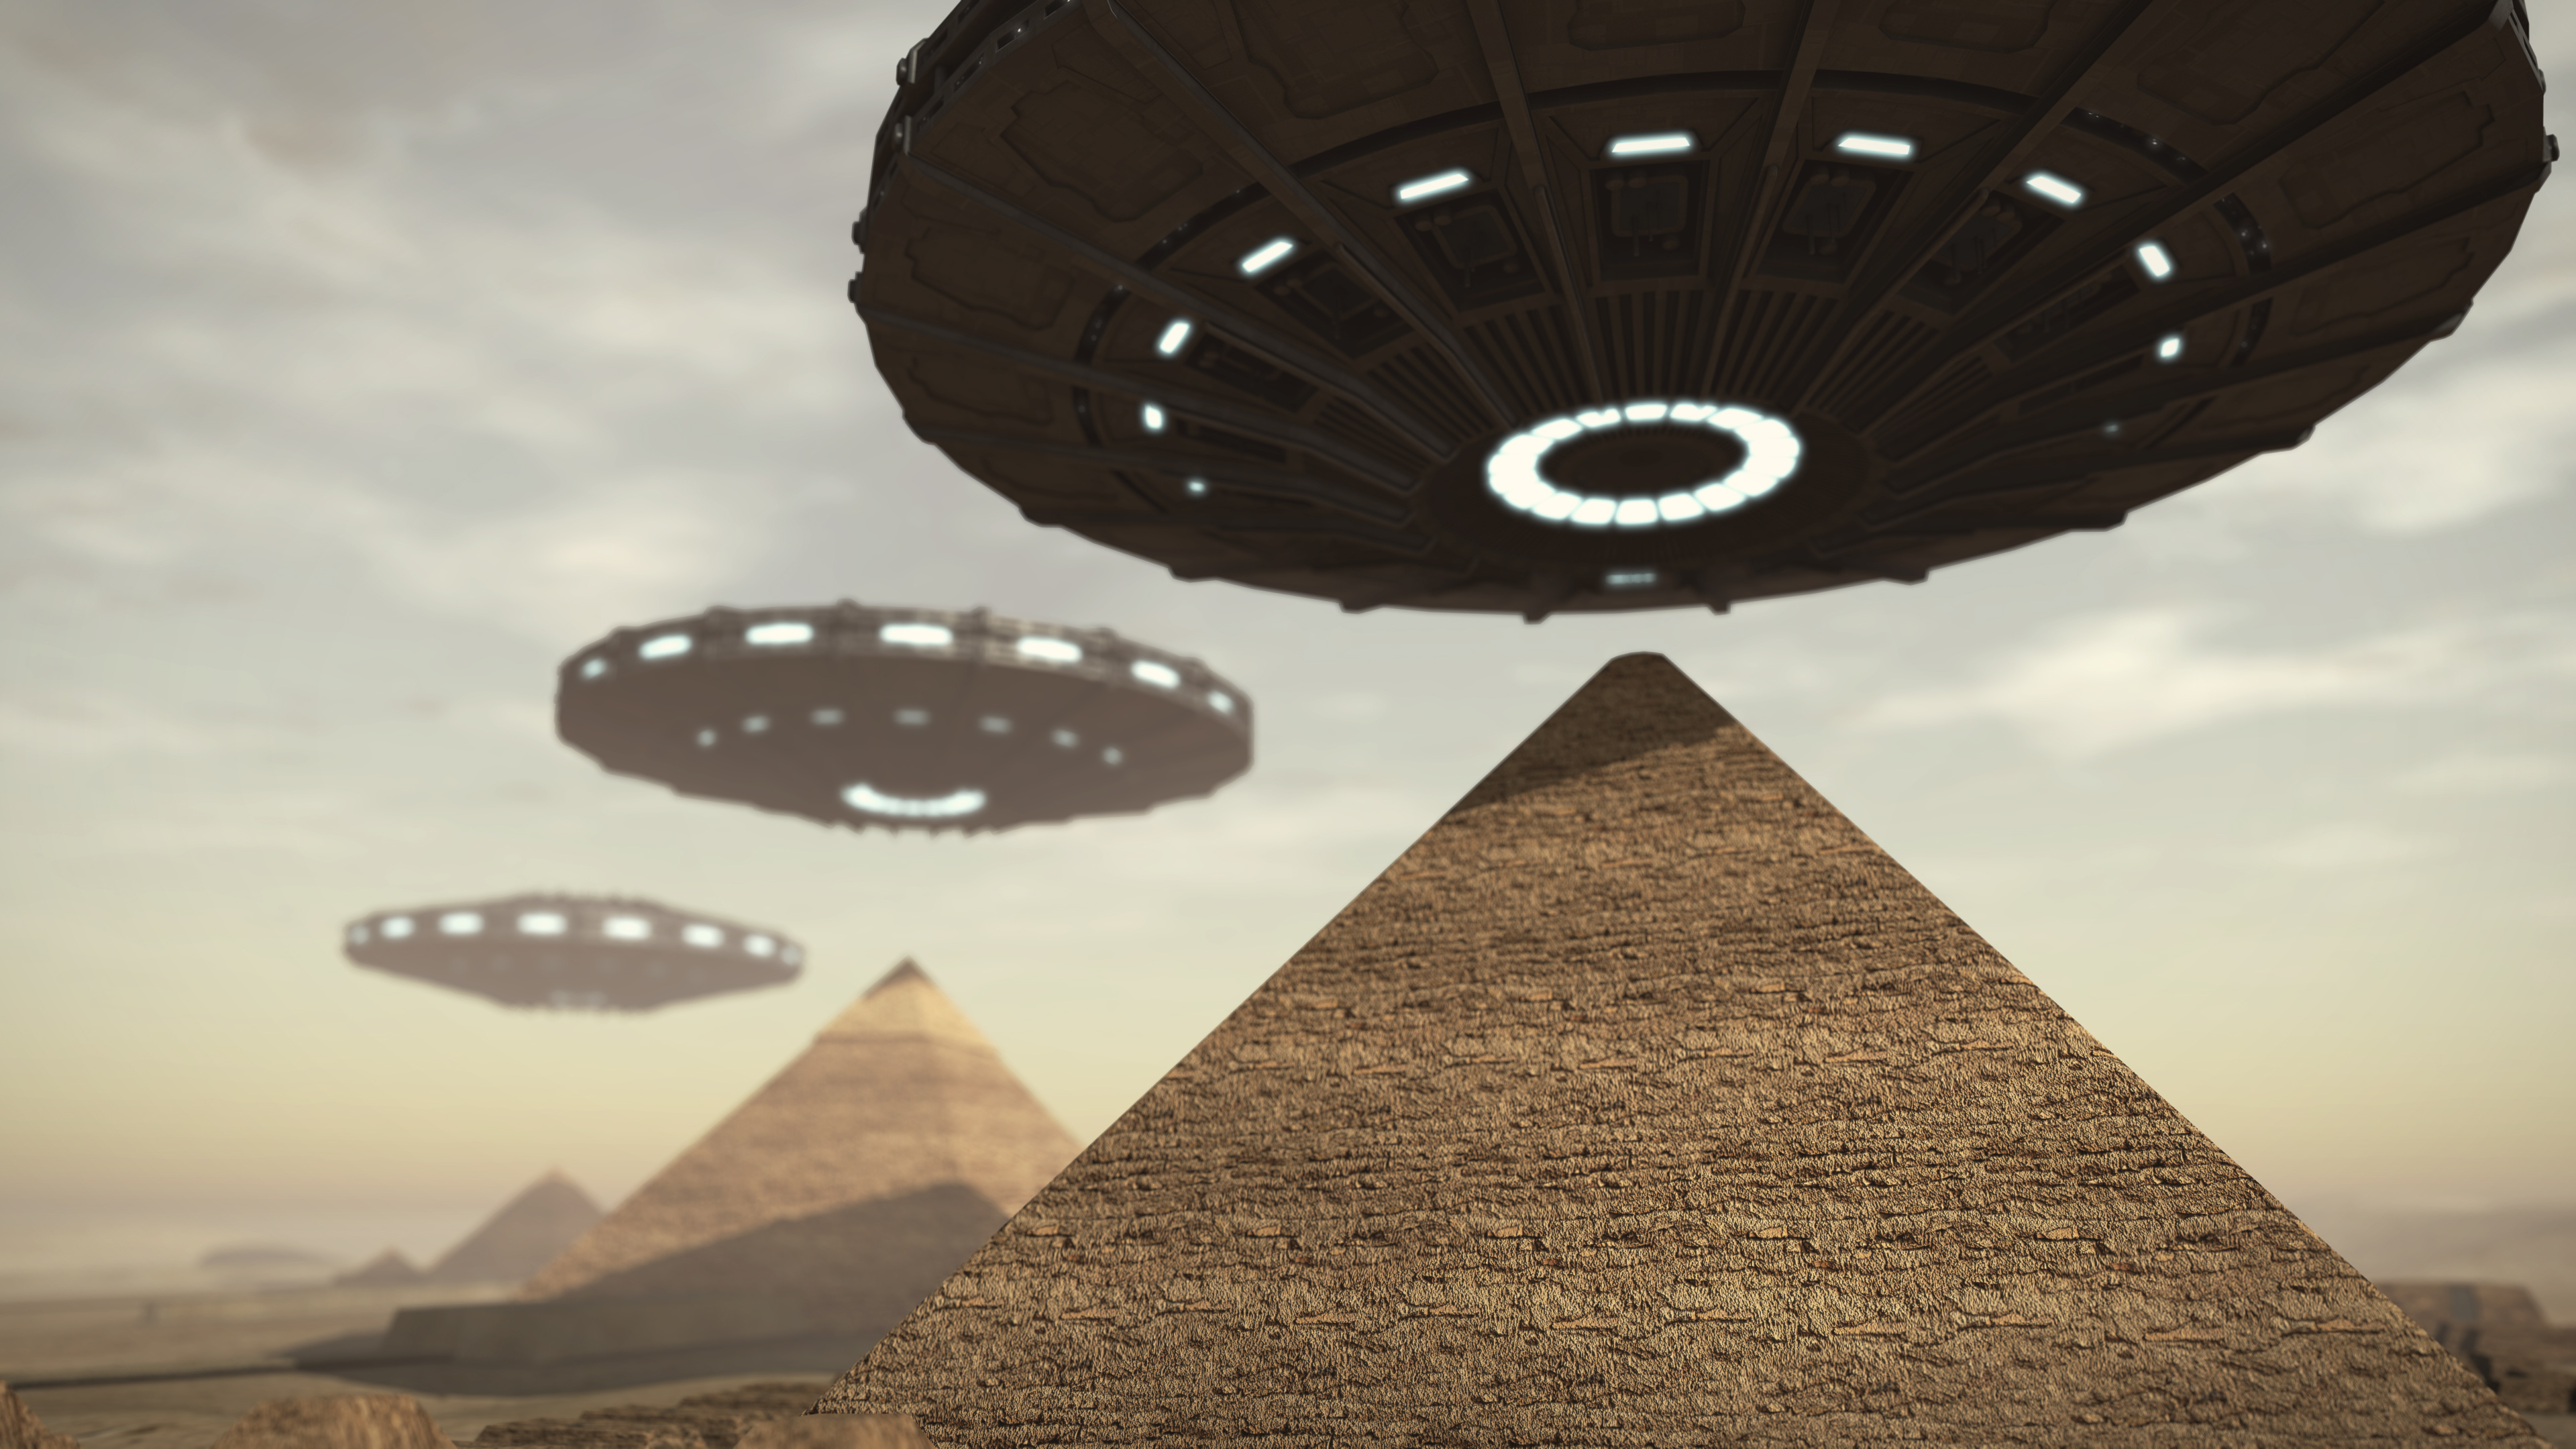 May have discovered. Пирамида Хеопса НЛО. Пришельцы и НЛО В Египте. Египетские пирамиды и НЛО. НЛО на пирамидах Египта.